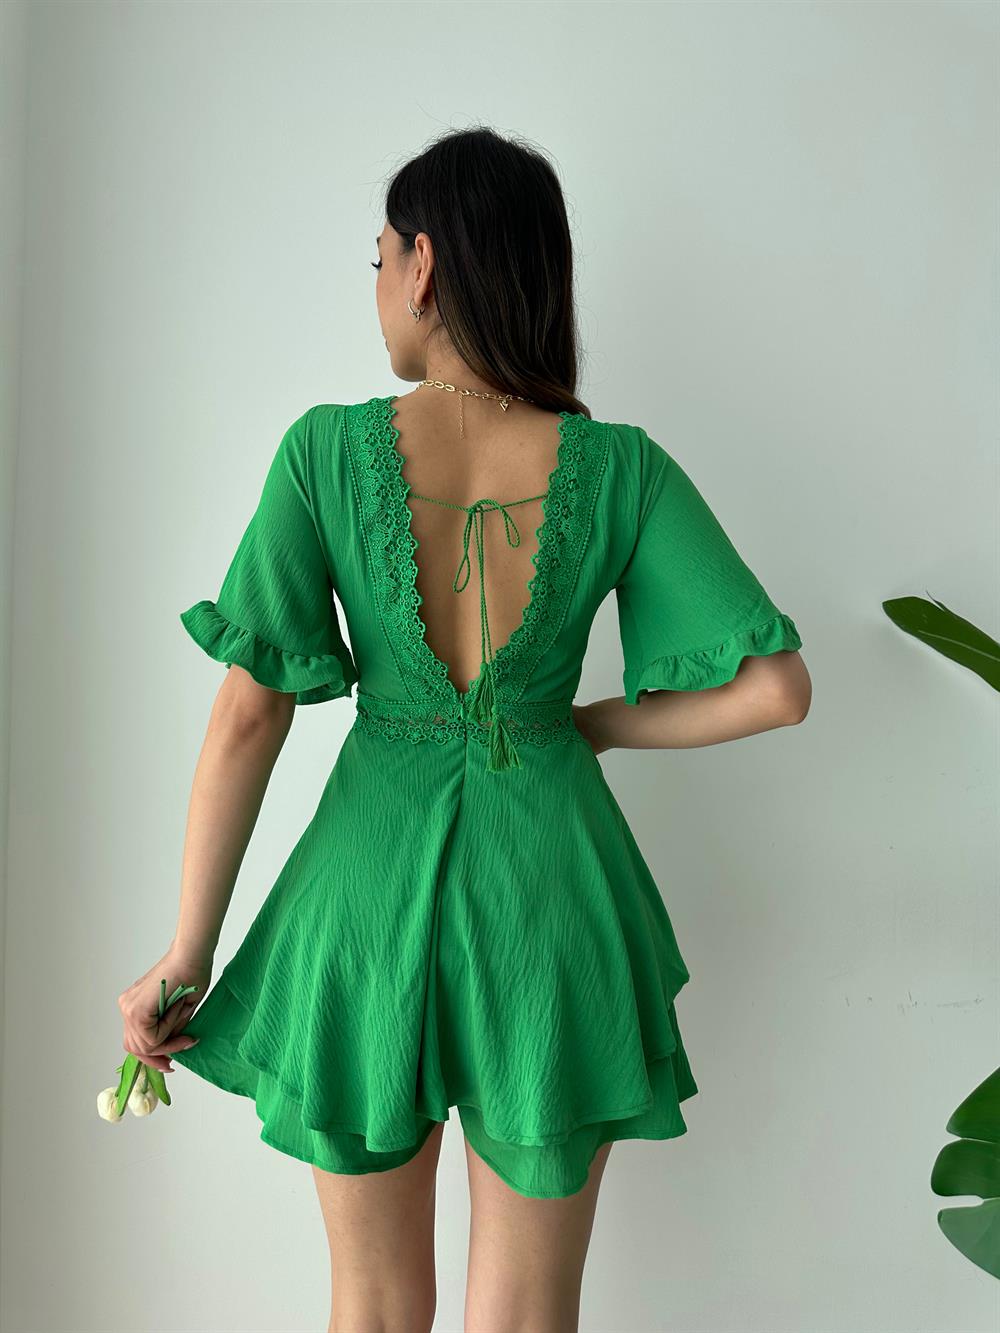 Kadın Sırt Dekoliteli Brode Detaylı Şortlu Tulum Elbise-Yeşil(1856)Valeria  Vilson